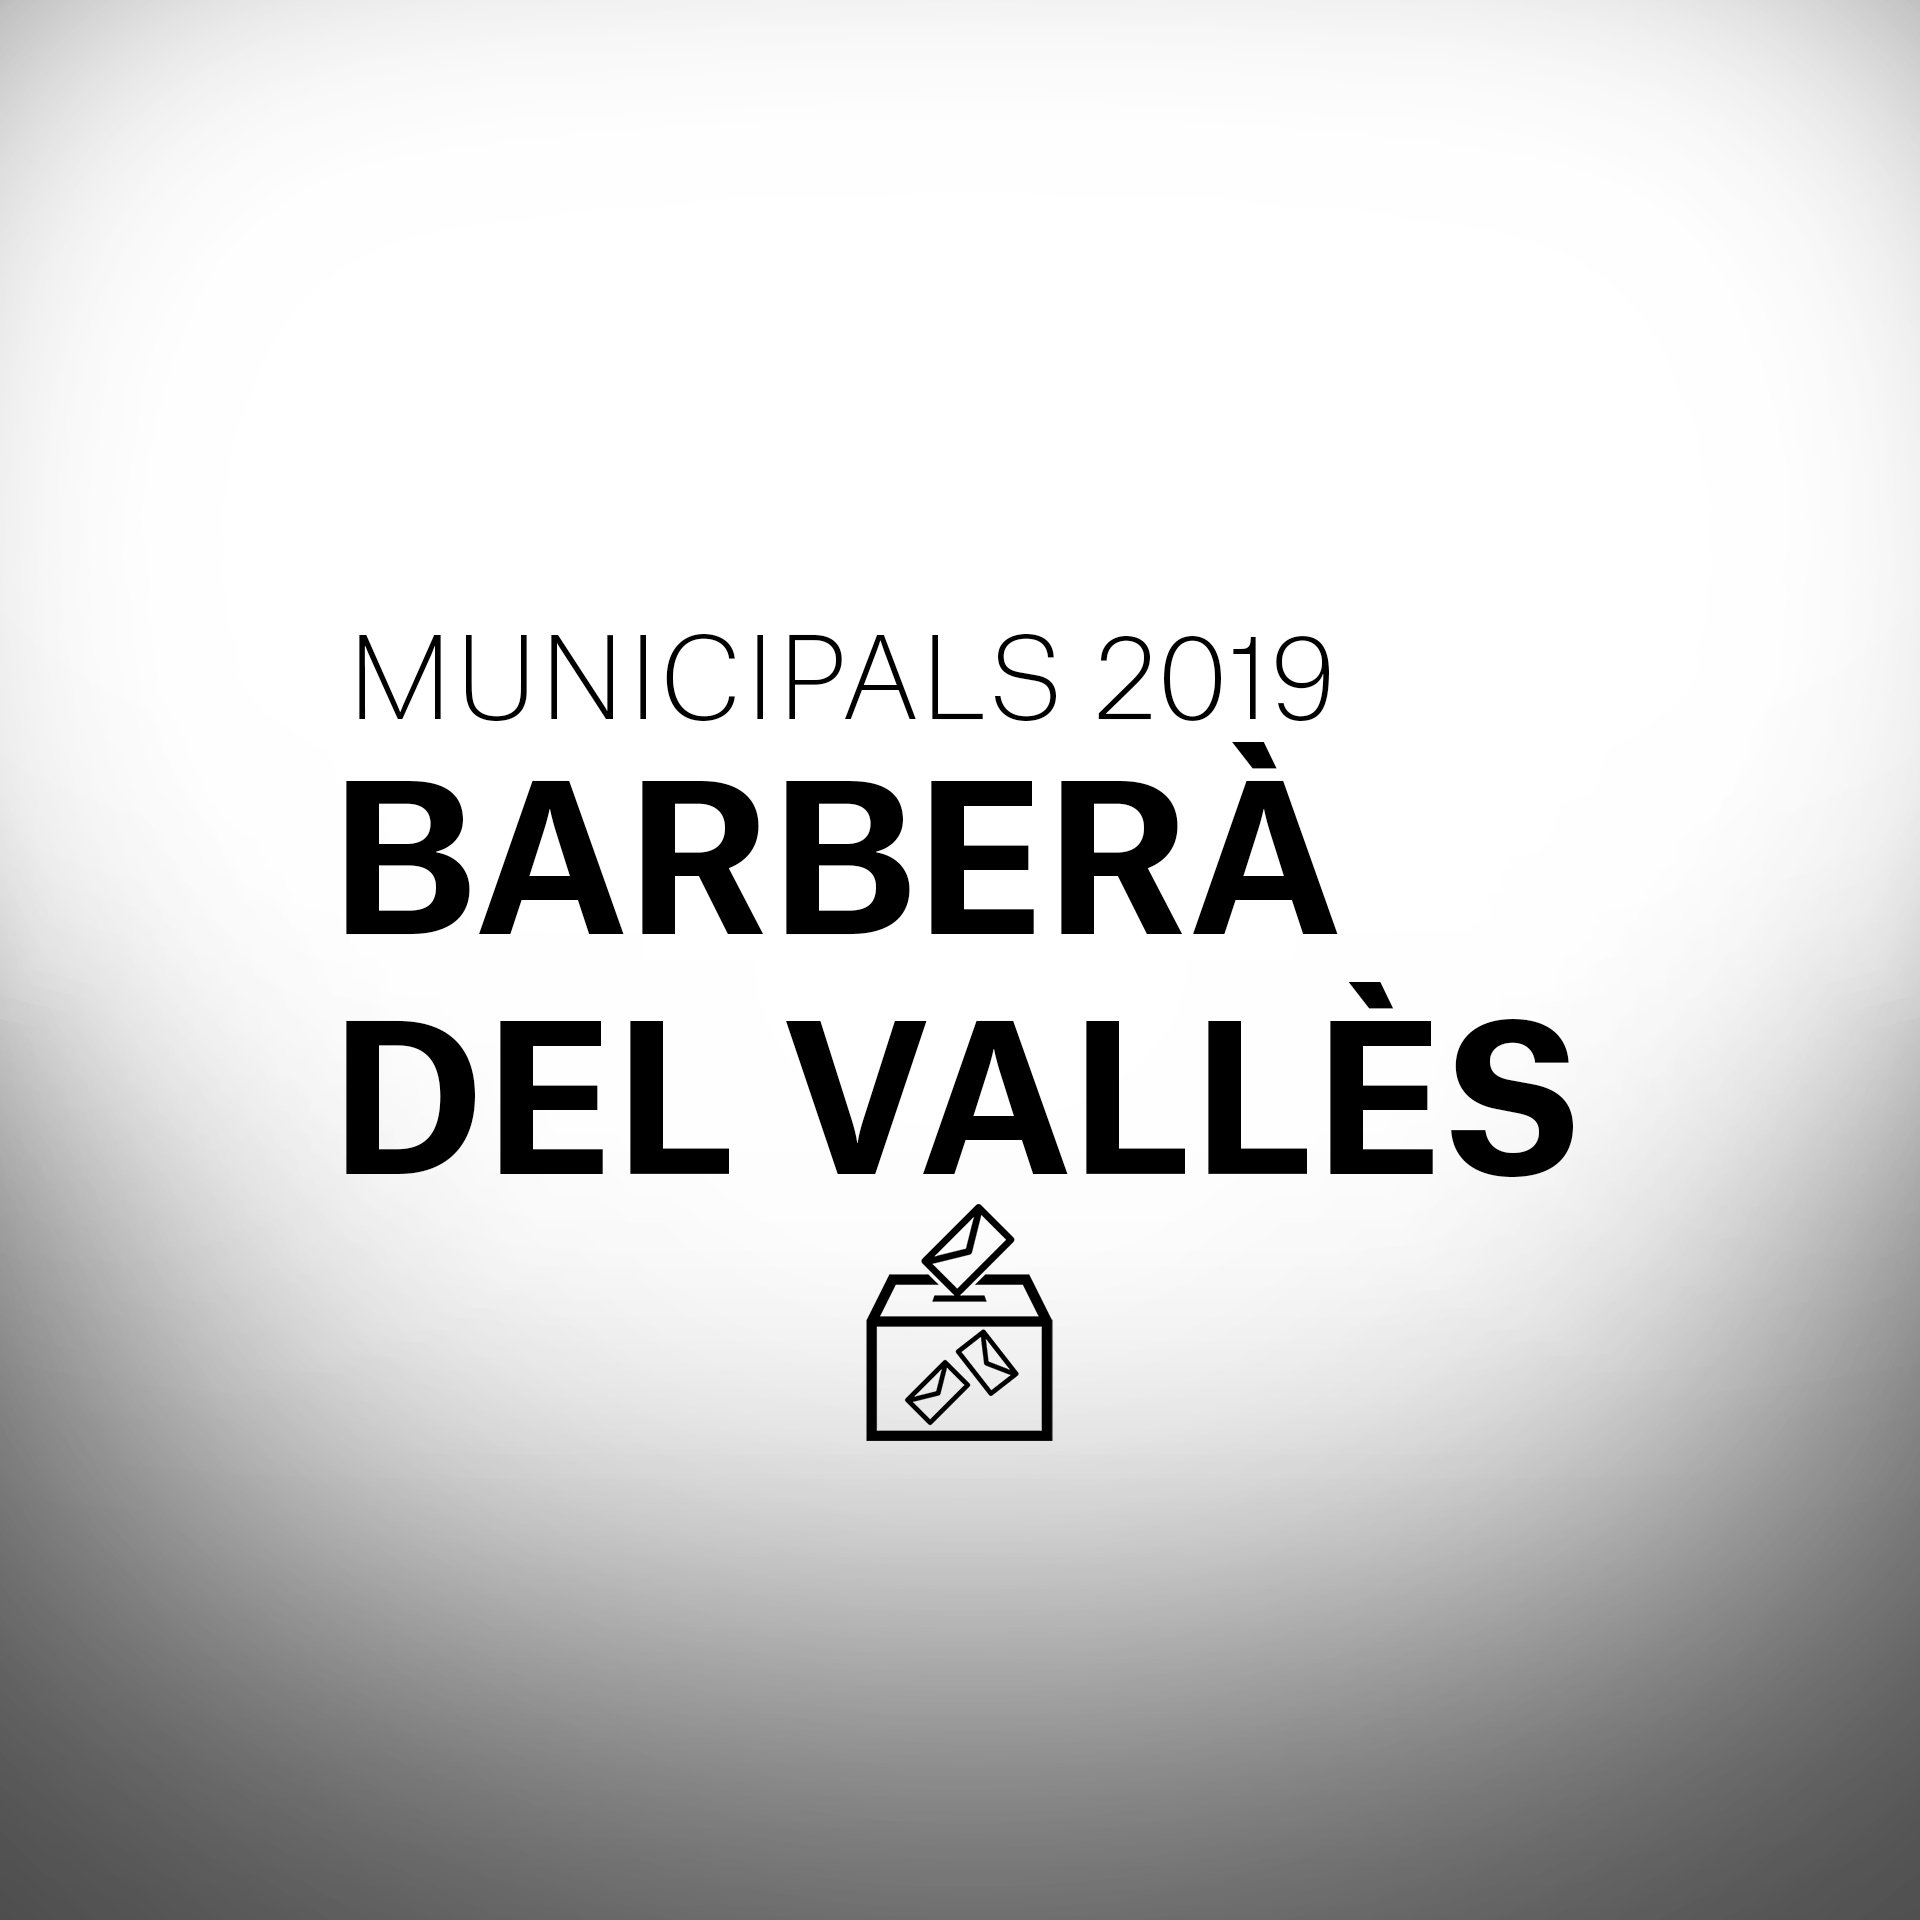 Què passarà a les eleccions municipals a Barberà del Vallès?